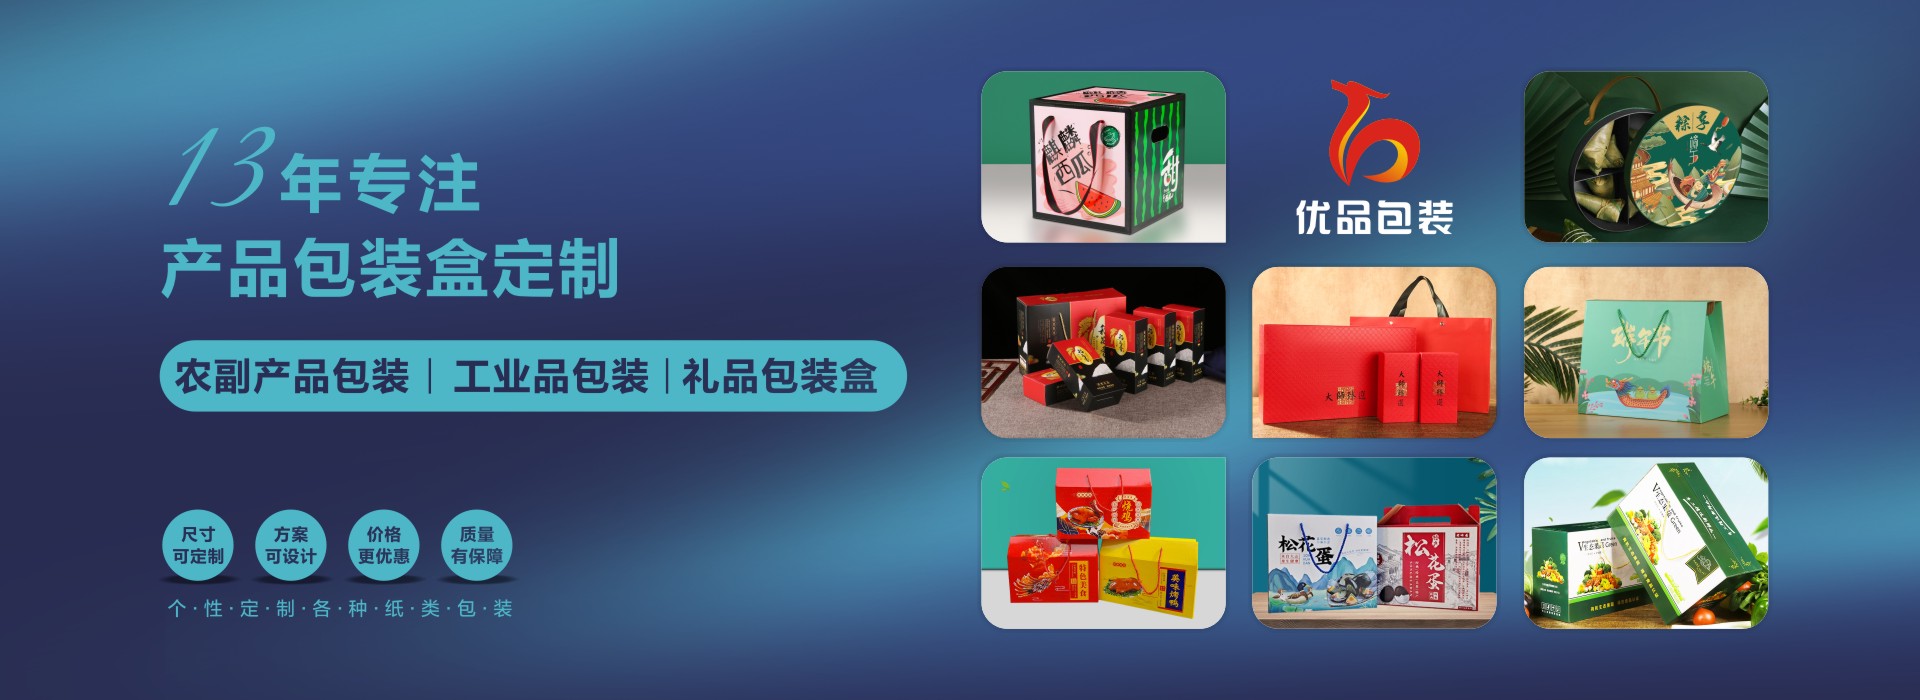 包裝(zhuang)盒印刷廠